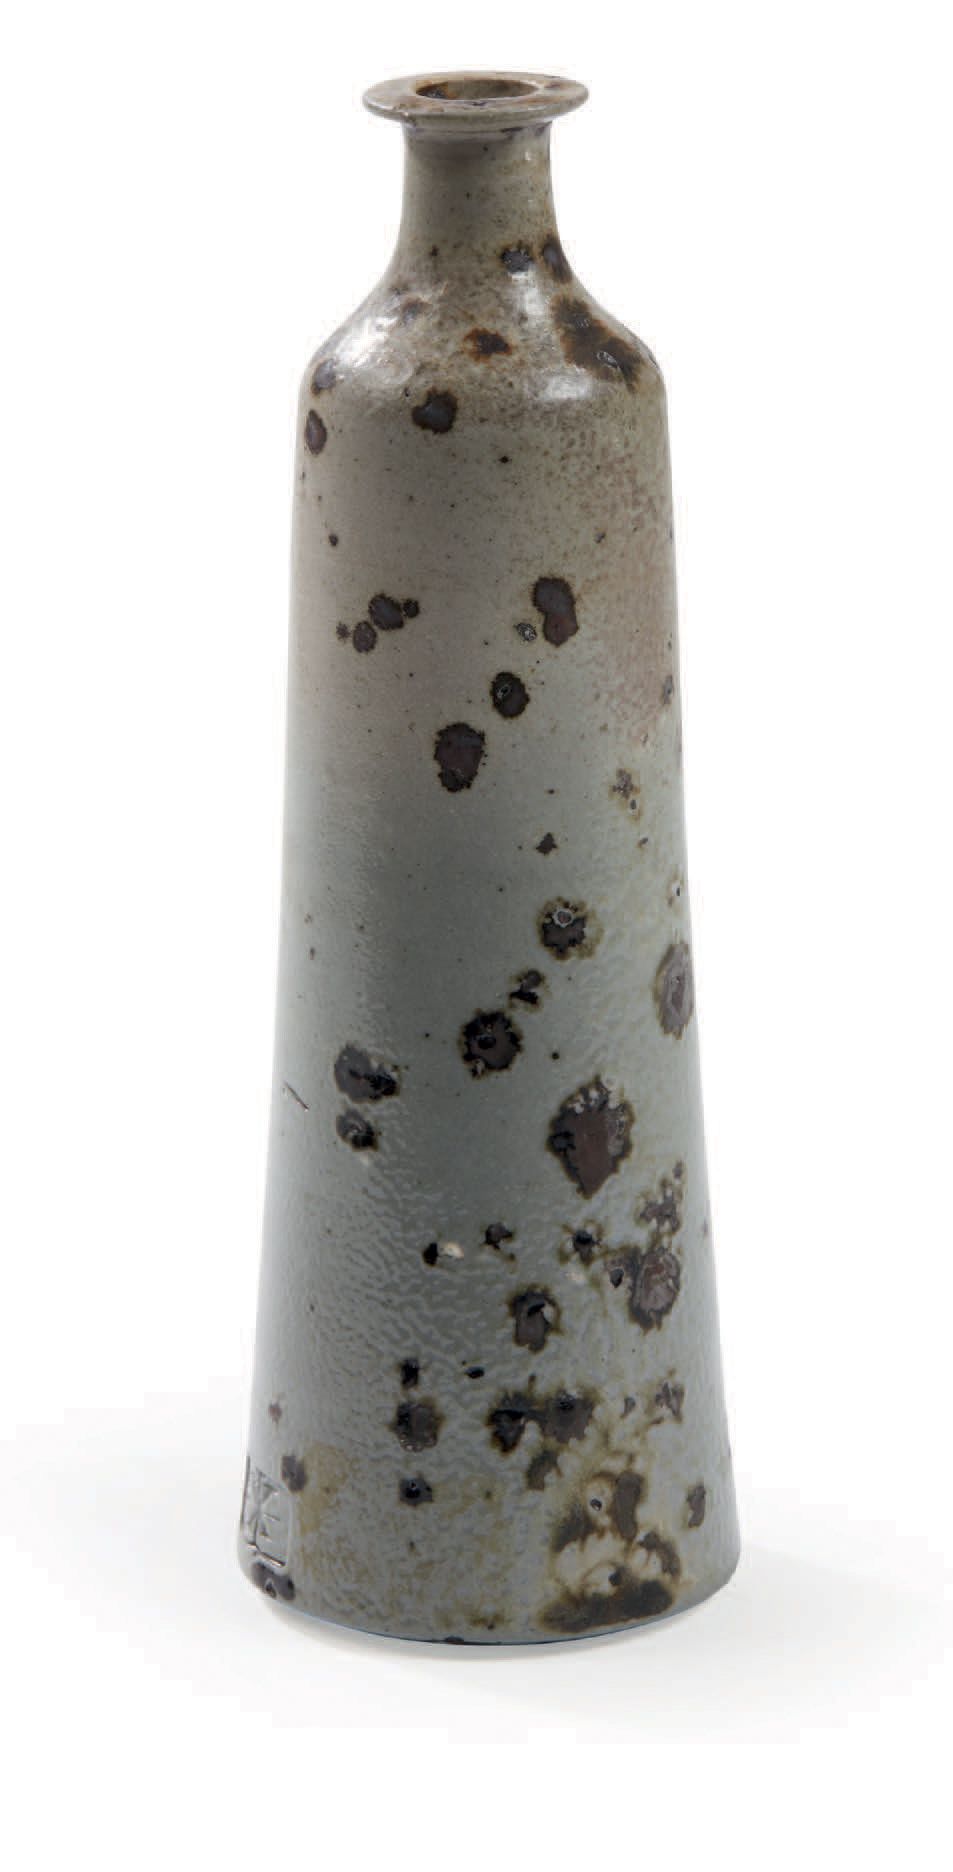 Robert DEBLANDER (1924-2010) 
Vase soliflore en grès
Signé
H : 20,5 cm